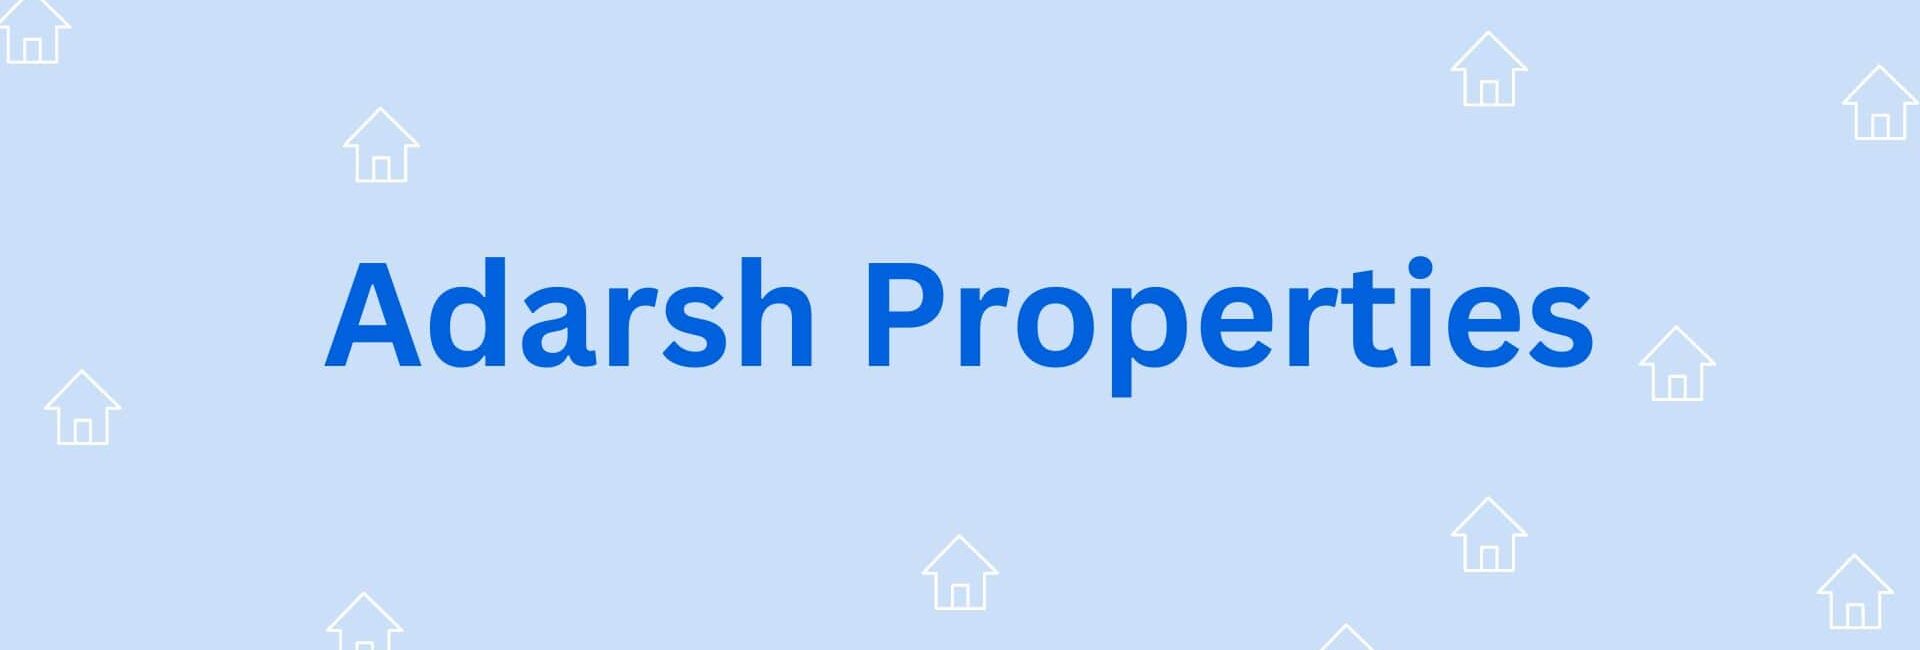 Adarsh Properties - Real estate agent in Hisar